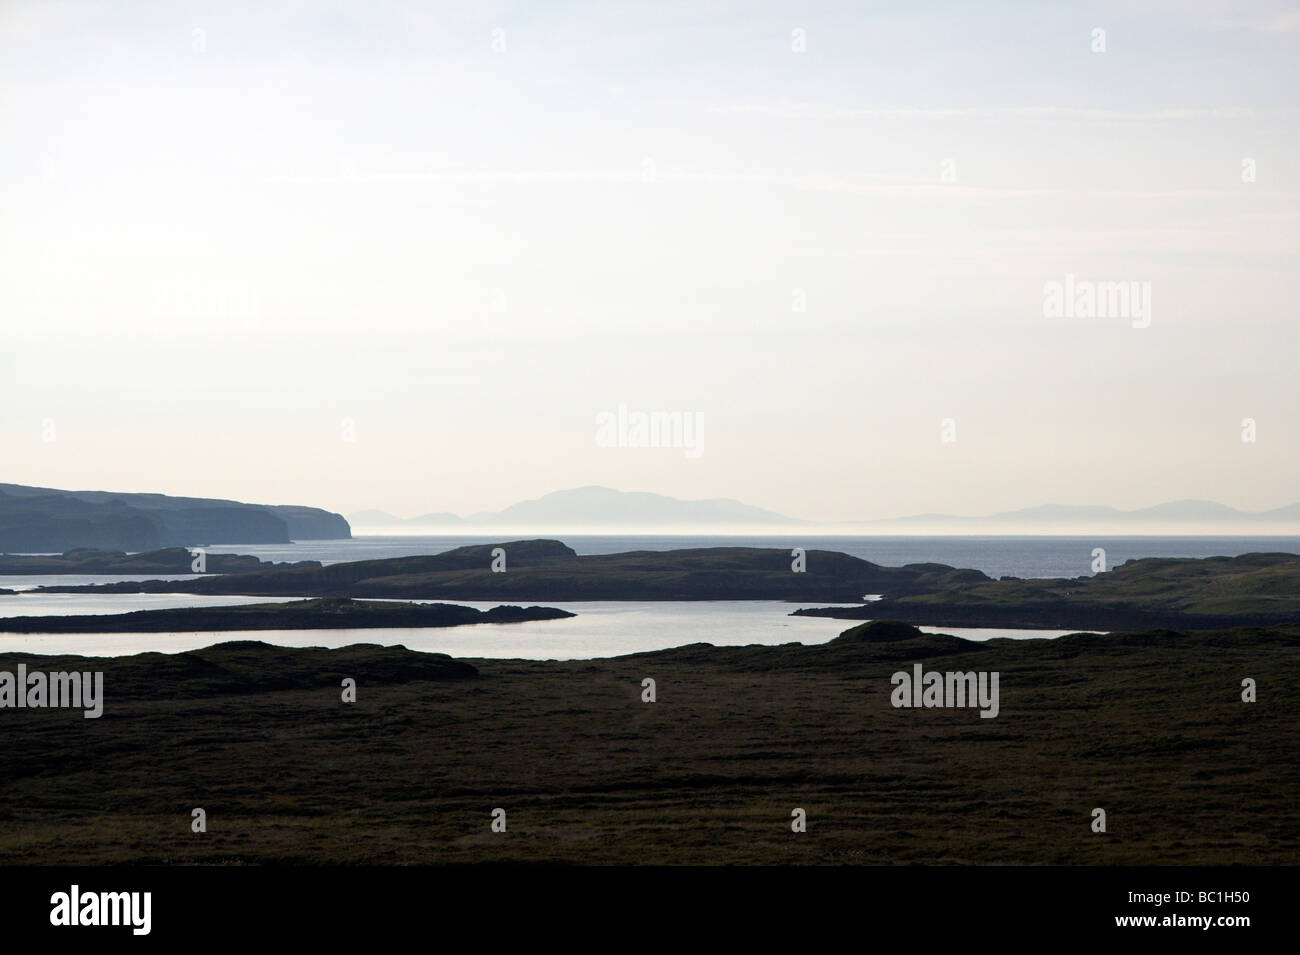 Vue d'Outer Hebrides, prises à partir de Dunvegan, Duirinish Peninsula, île de Skye Hébrides intérieures, côte ouest de l'Ecosse, Royaume-Uni Banque D'Images